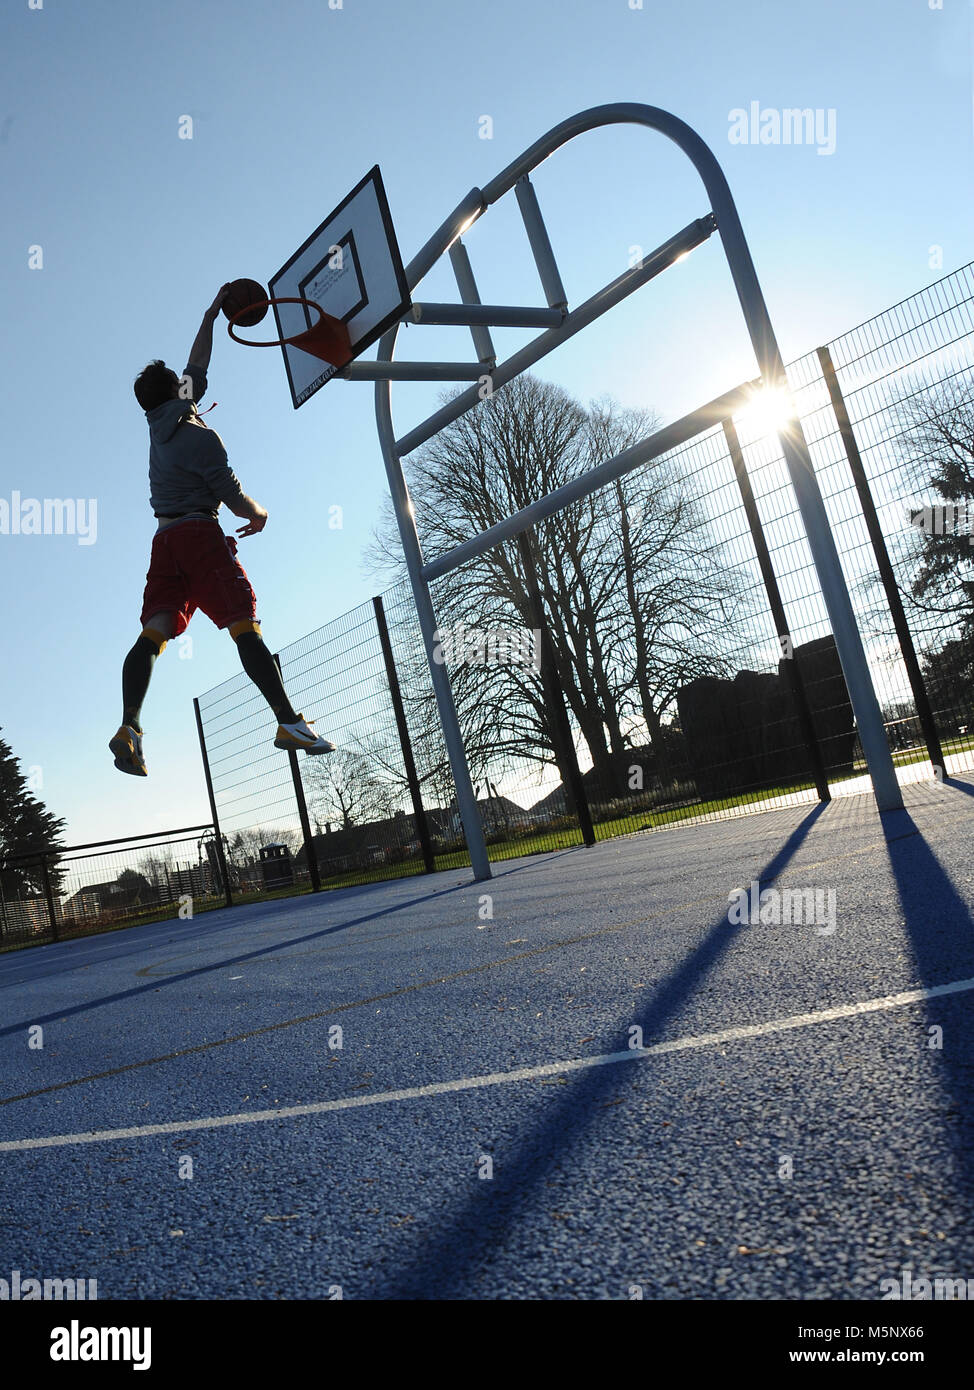 Un rodaje en exteriores de un jugador de baloncesto en Devizes, Wiltshire. Rodada en la luz solar natural en una cancha de baloncesto. Amplia profundidad de archivado, con buena iluminación. Foto de stock